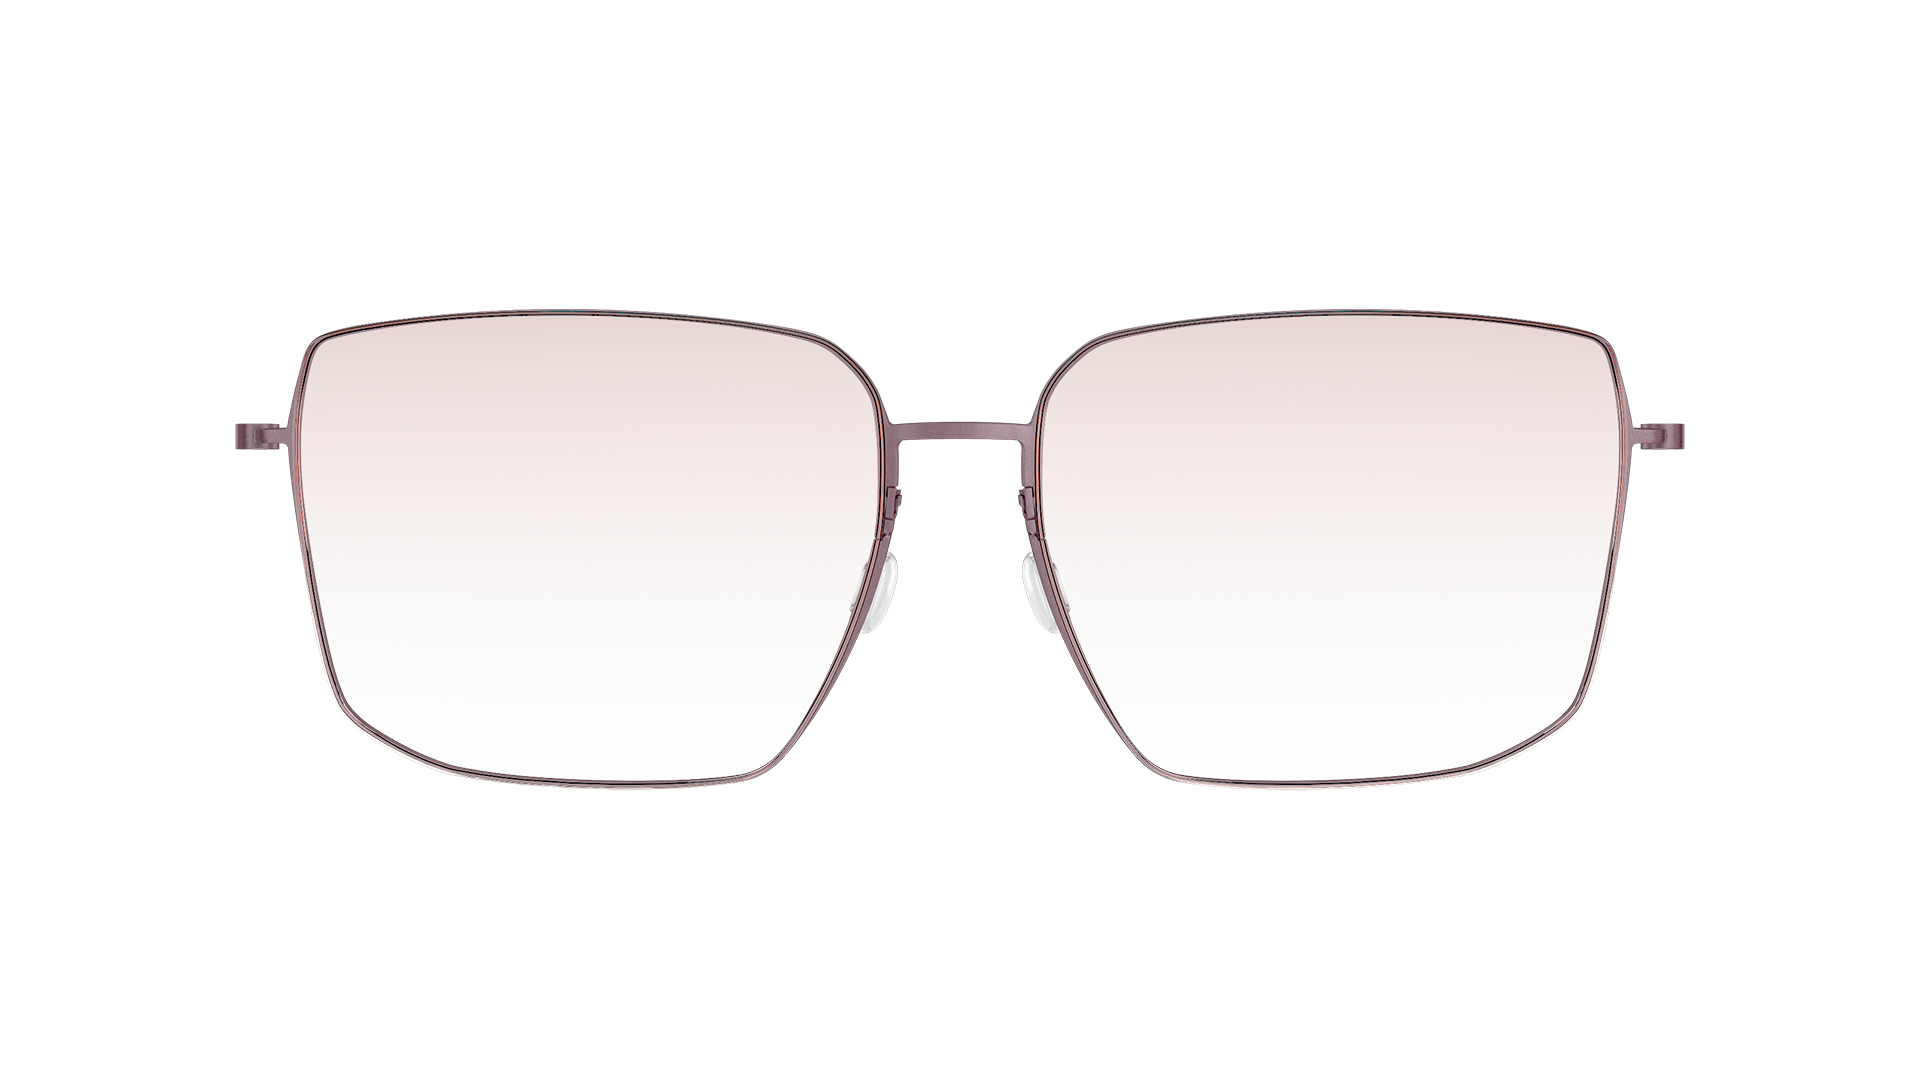 LINDBERG thintanium, Modell 5511 U14, eckige Titanbrille mit braun getönten Gläsern, SL89